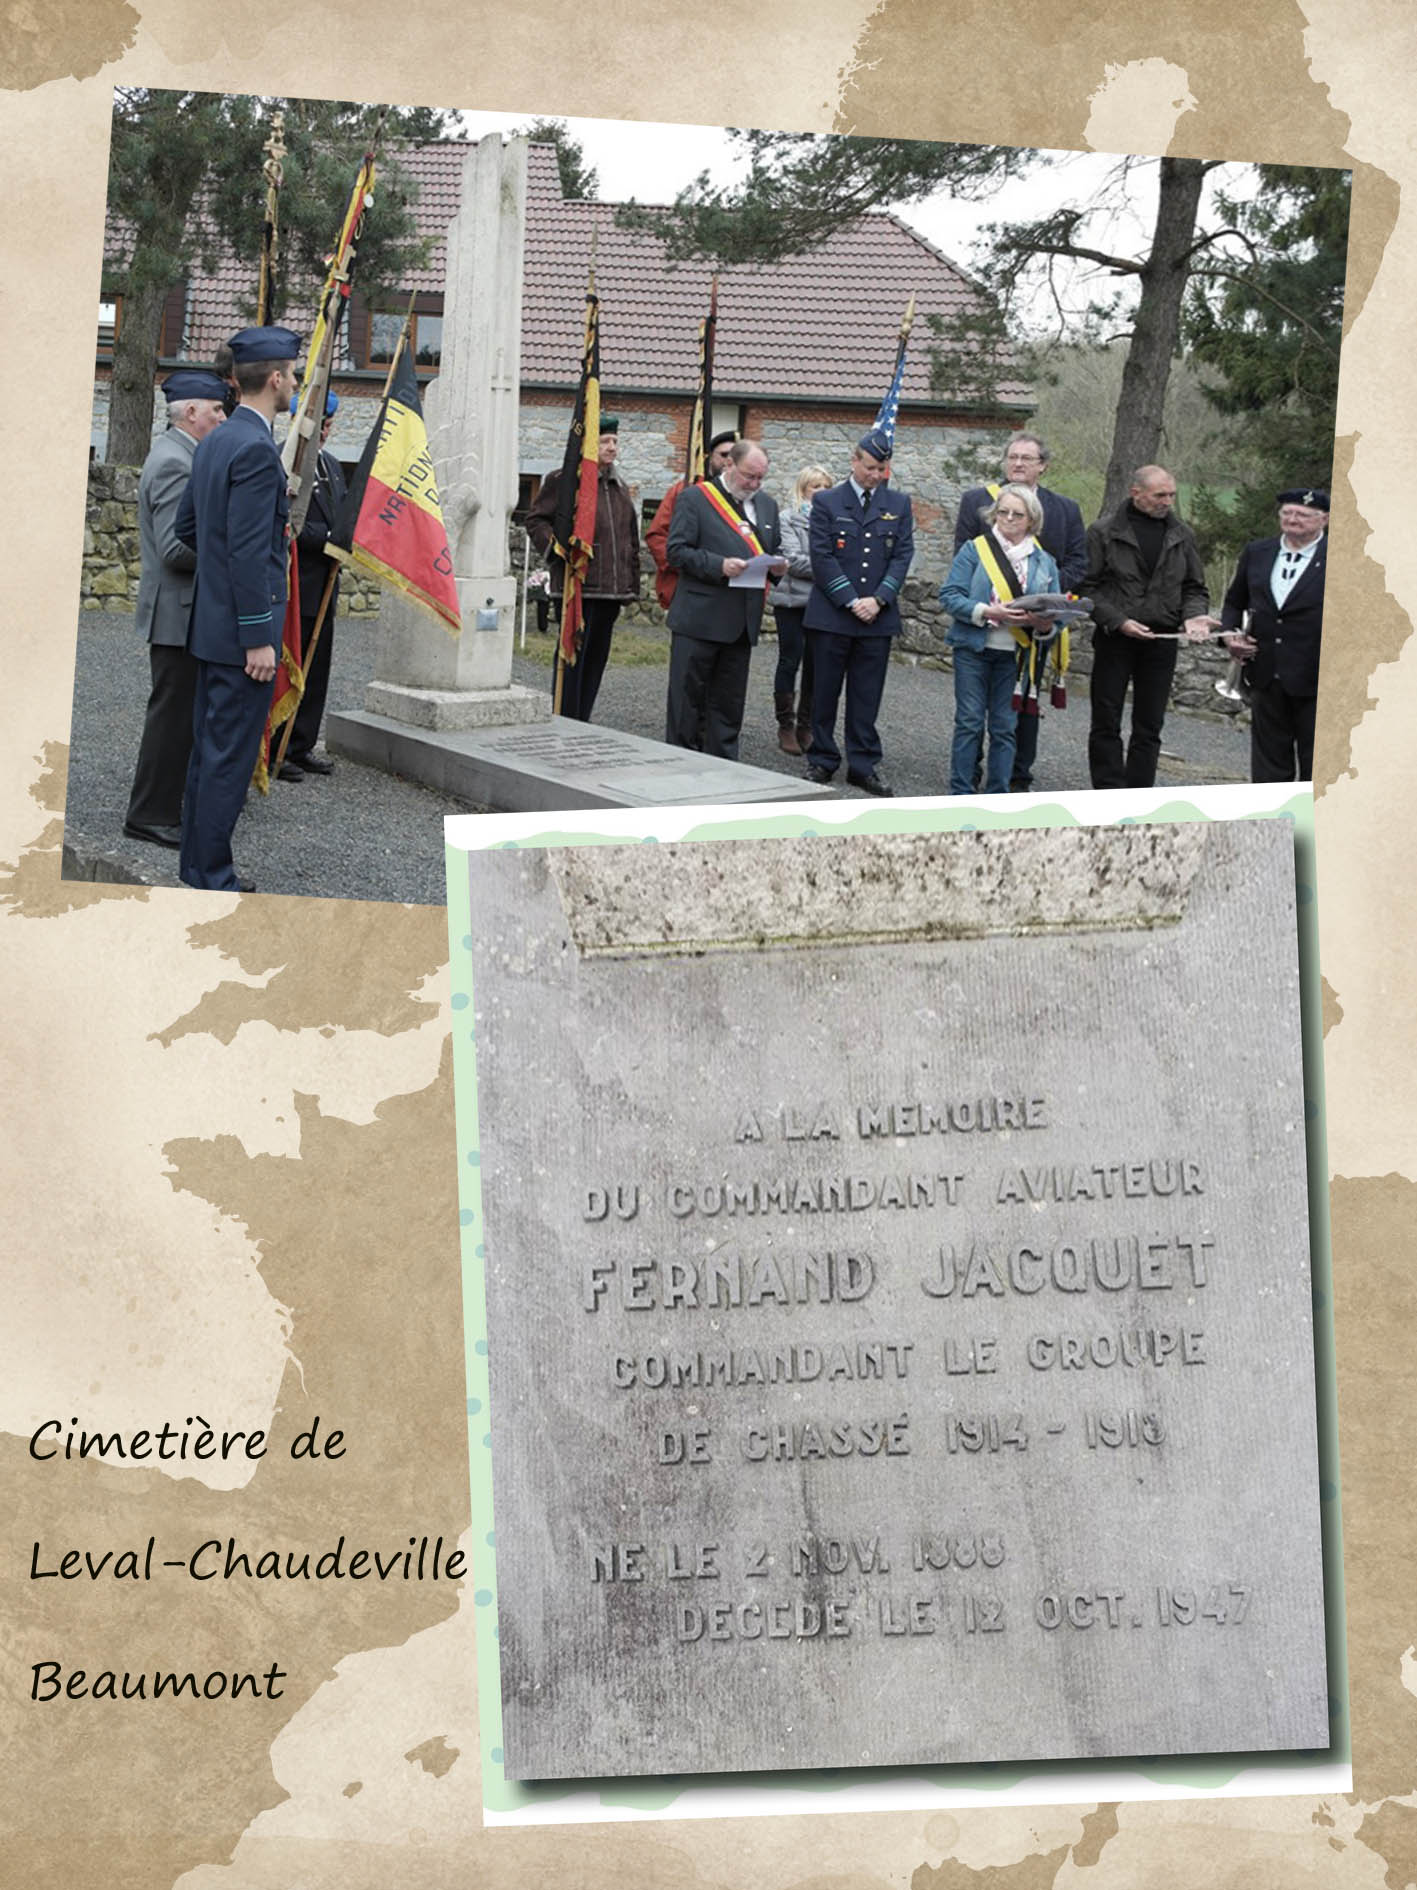 site to be cimetière leval chaudeville beaumont